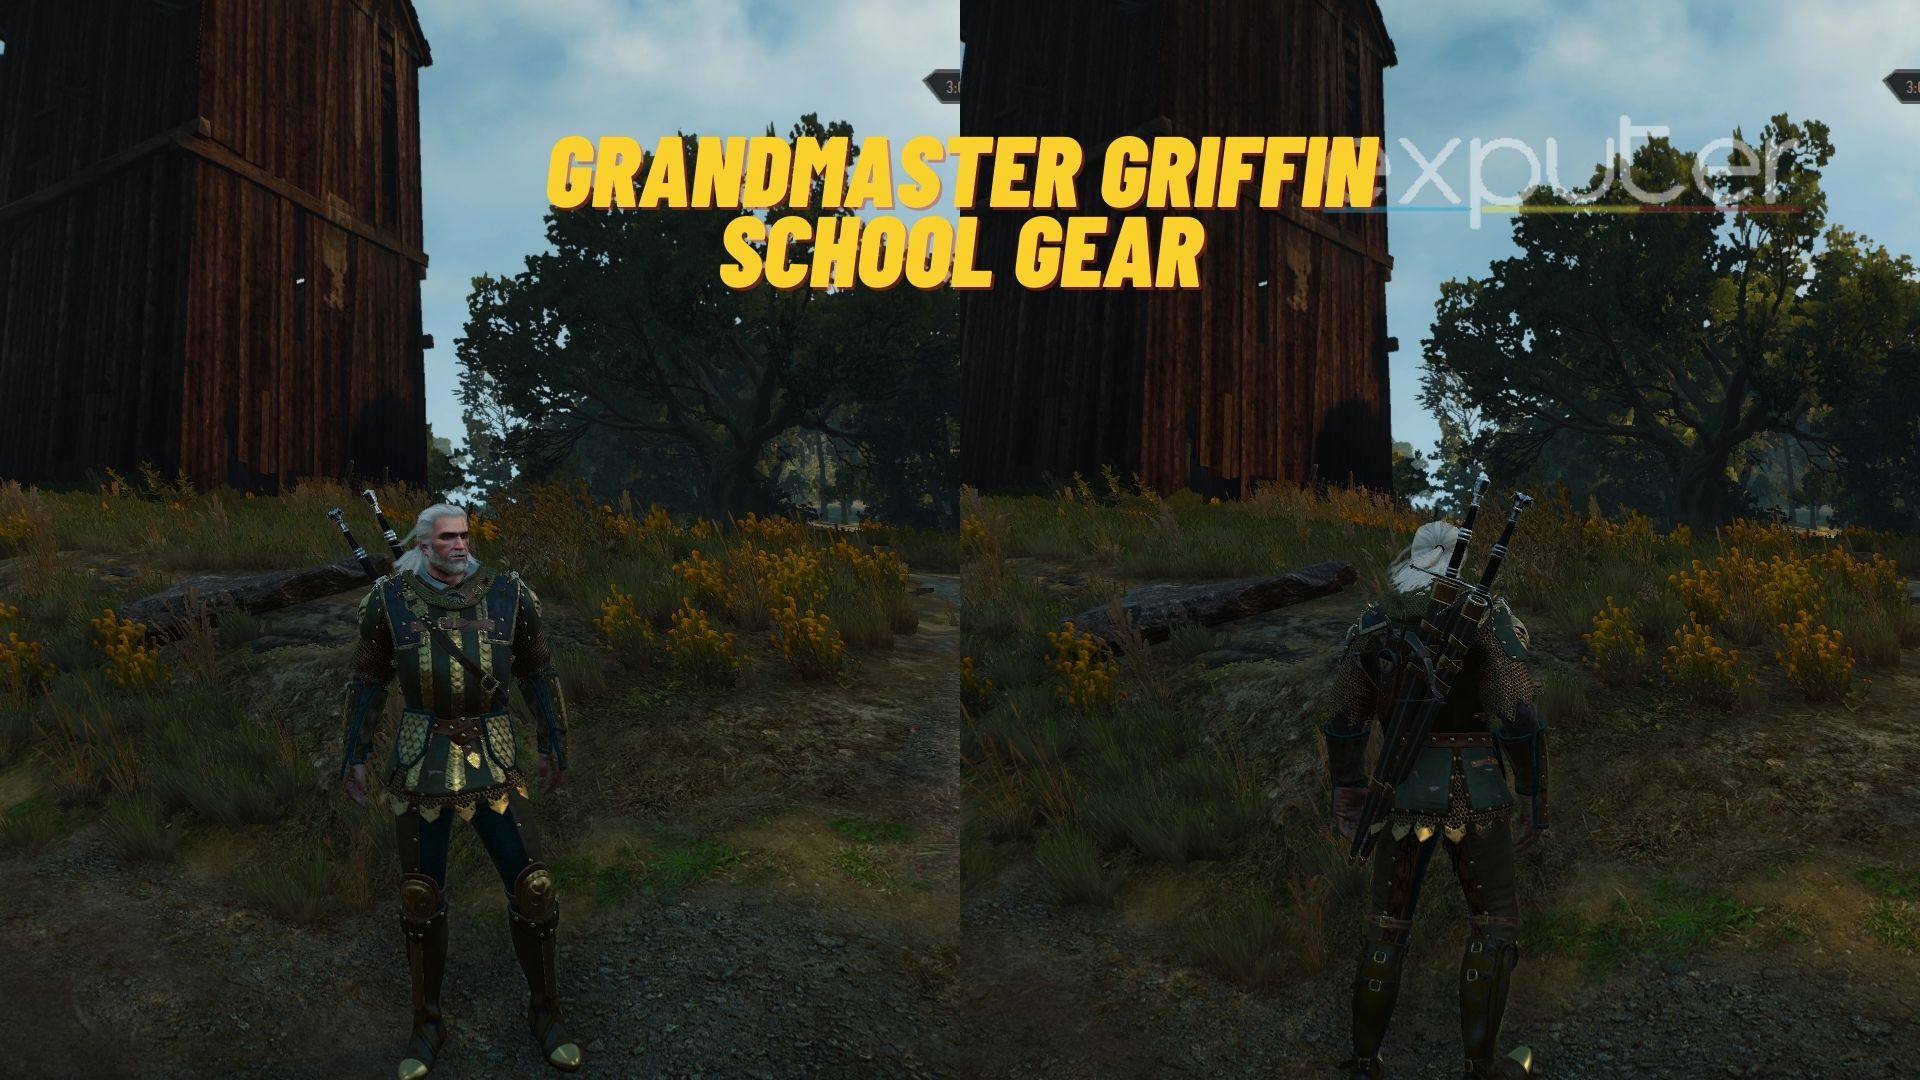 Grandmaster Griffin School Gear in Witcher 3.